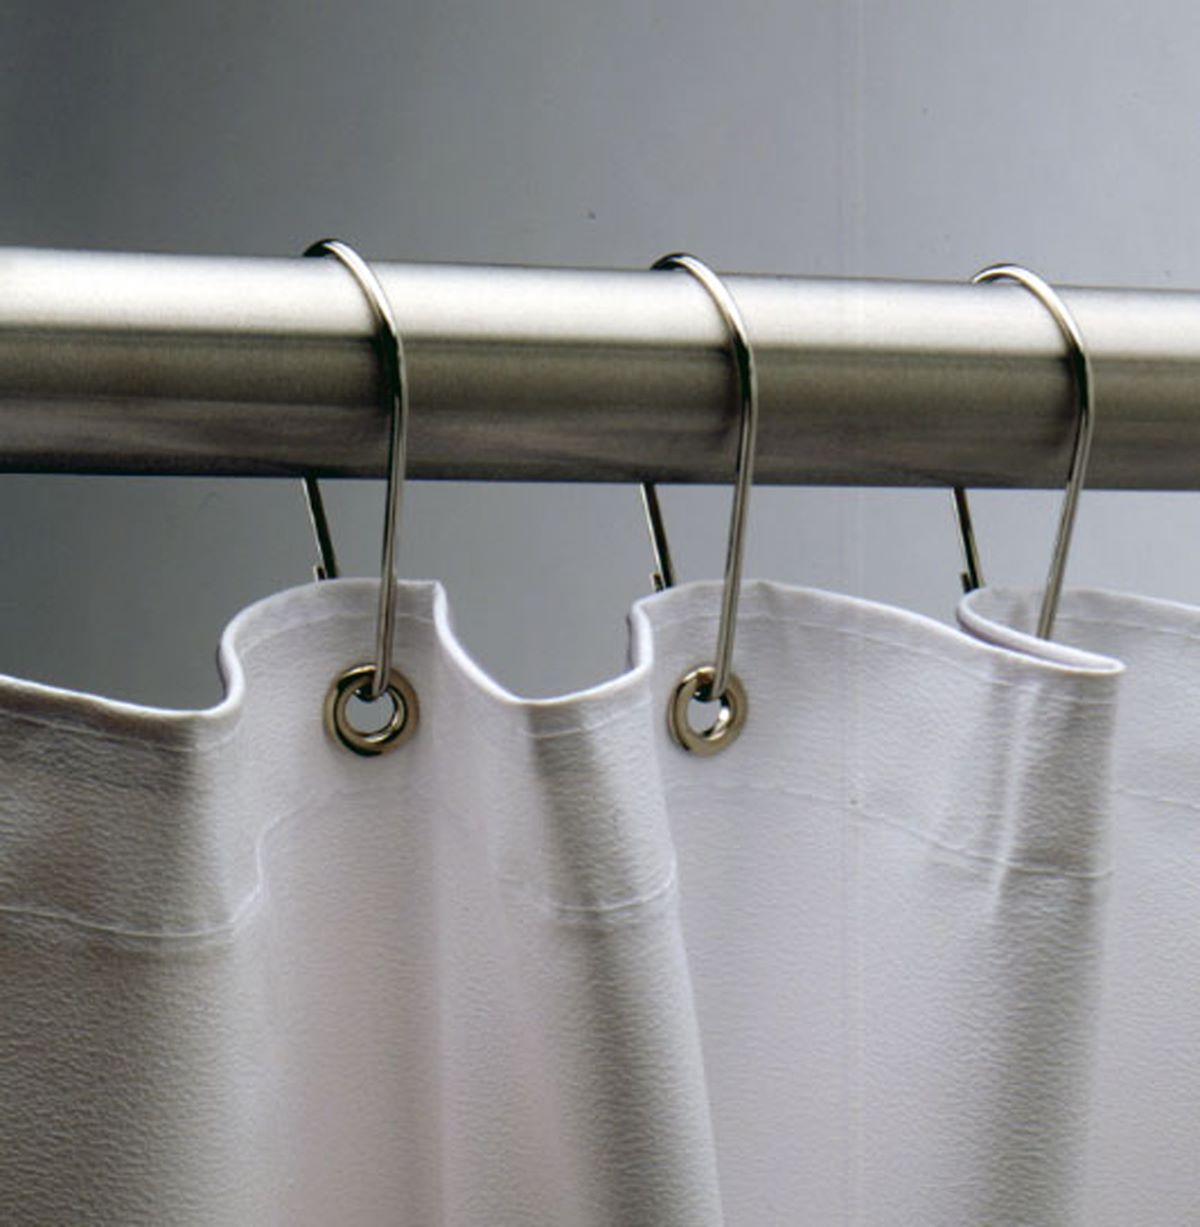 11 Best Shower Hooks For Curtain for 2023